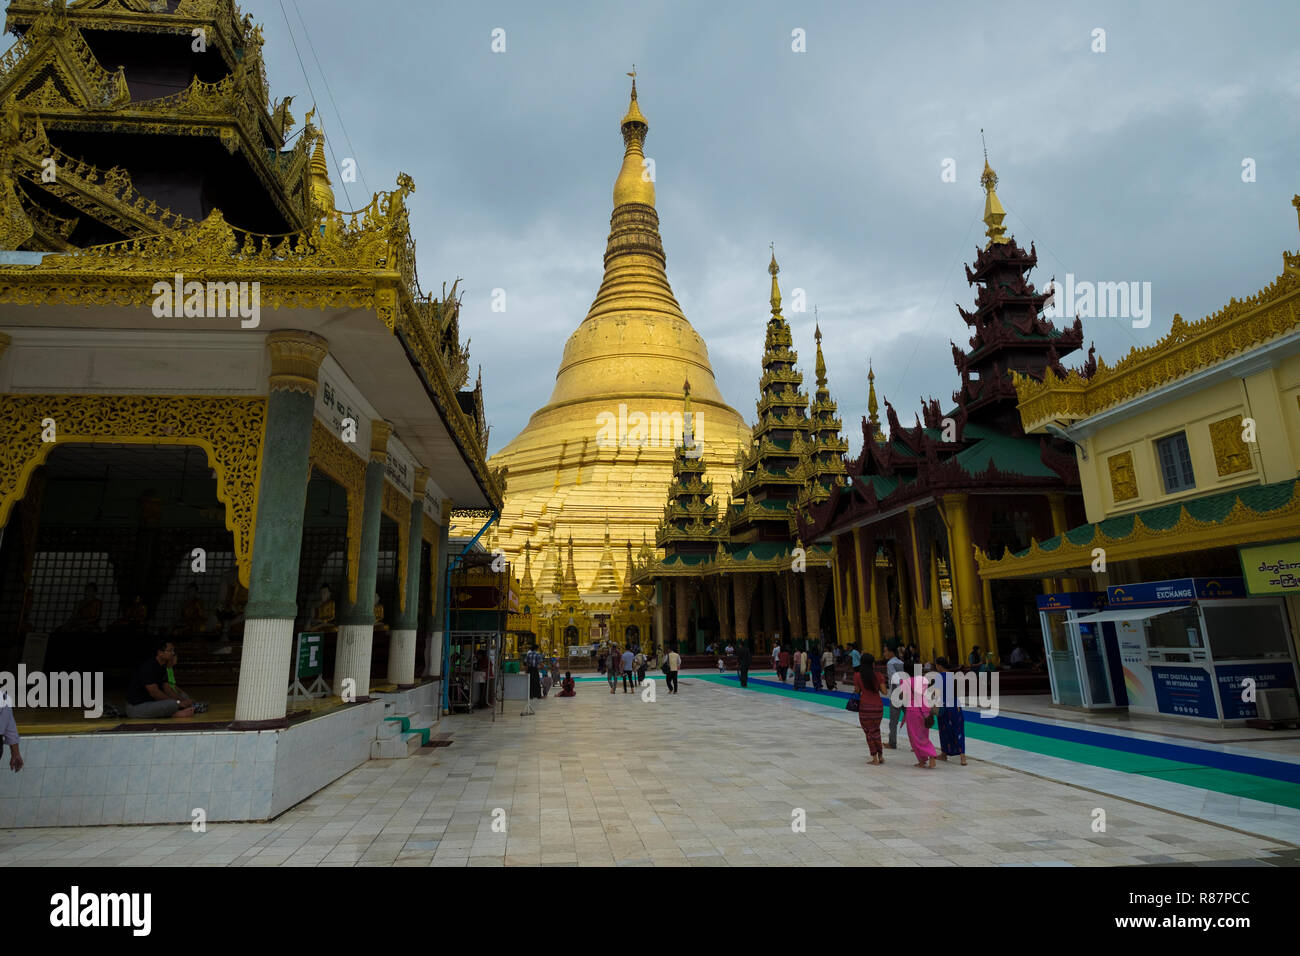 View of the big Shwedagon Pagoda in Yangon, Myanmar. Stock Photo